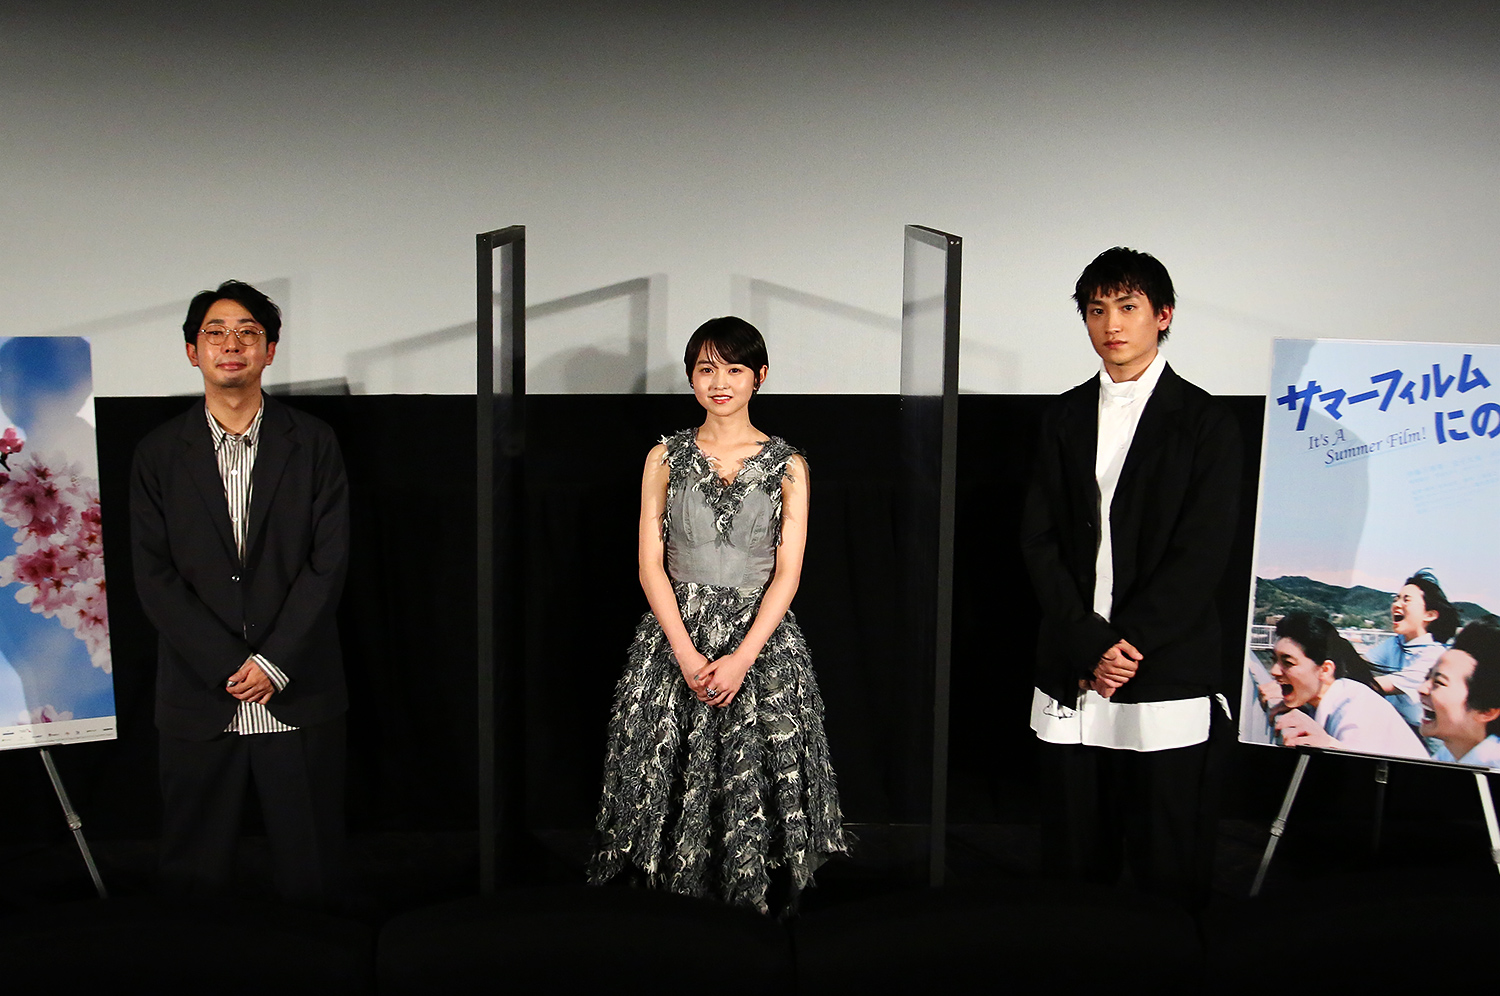 It's a Summer Film (SA) Soushi Matsumoto (Director), Marika Ito (Actress), Daichi Kaneko (Actor)